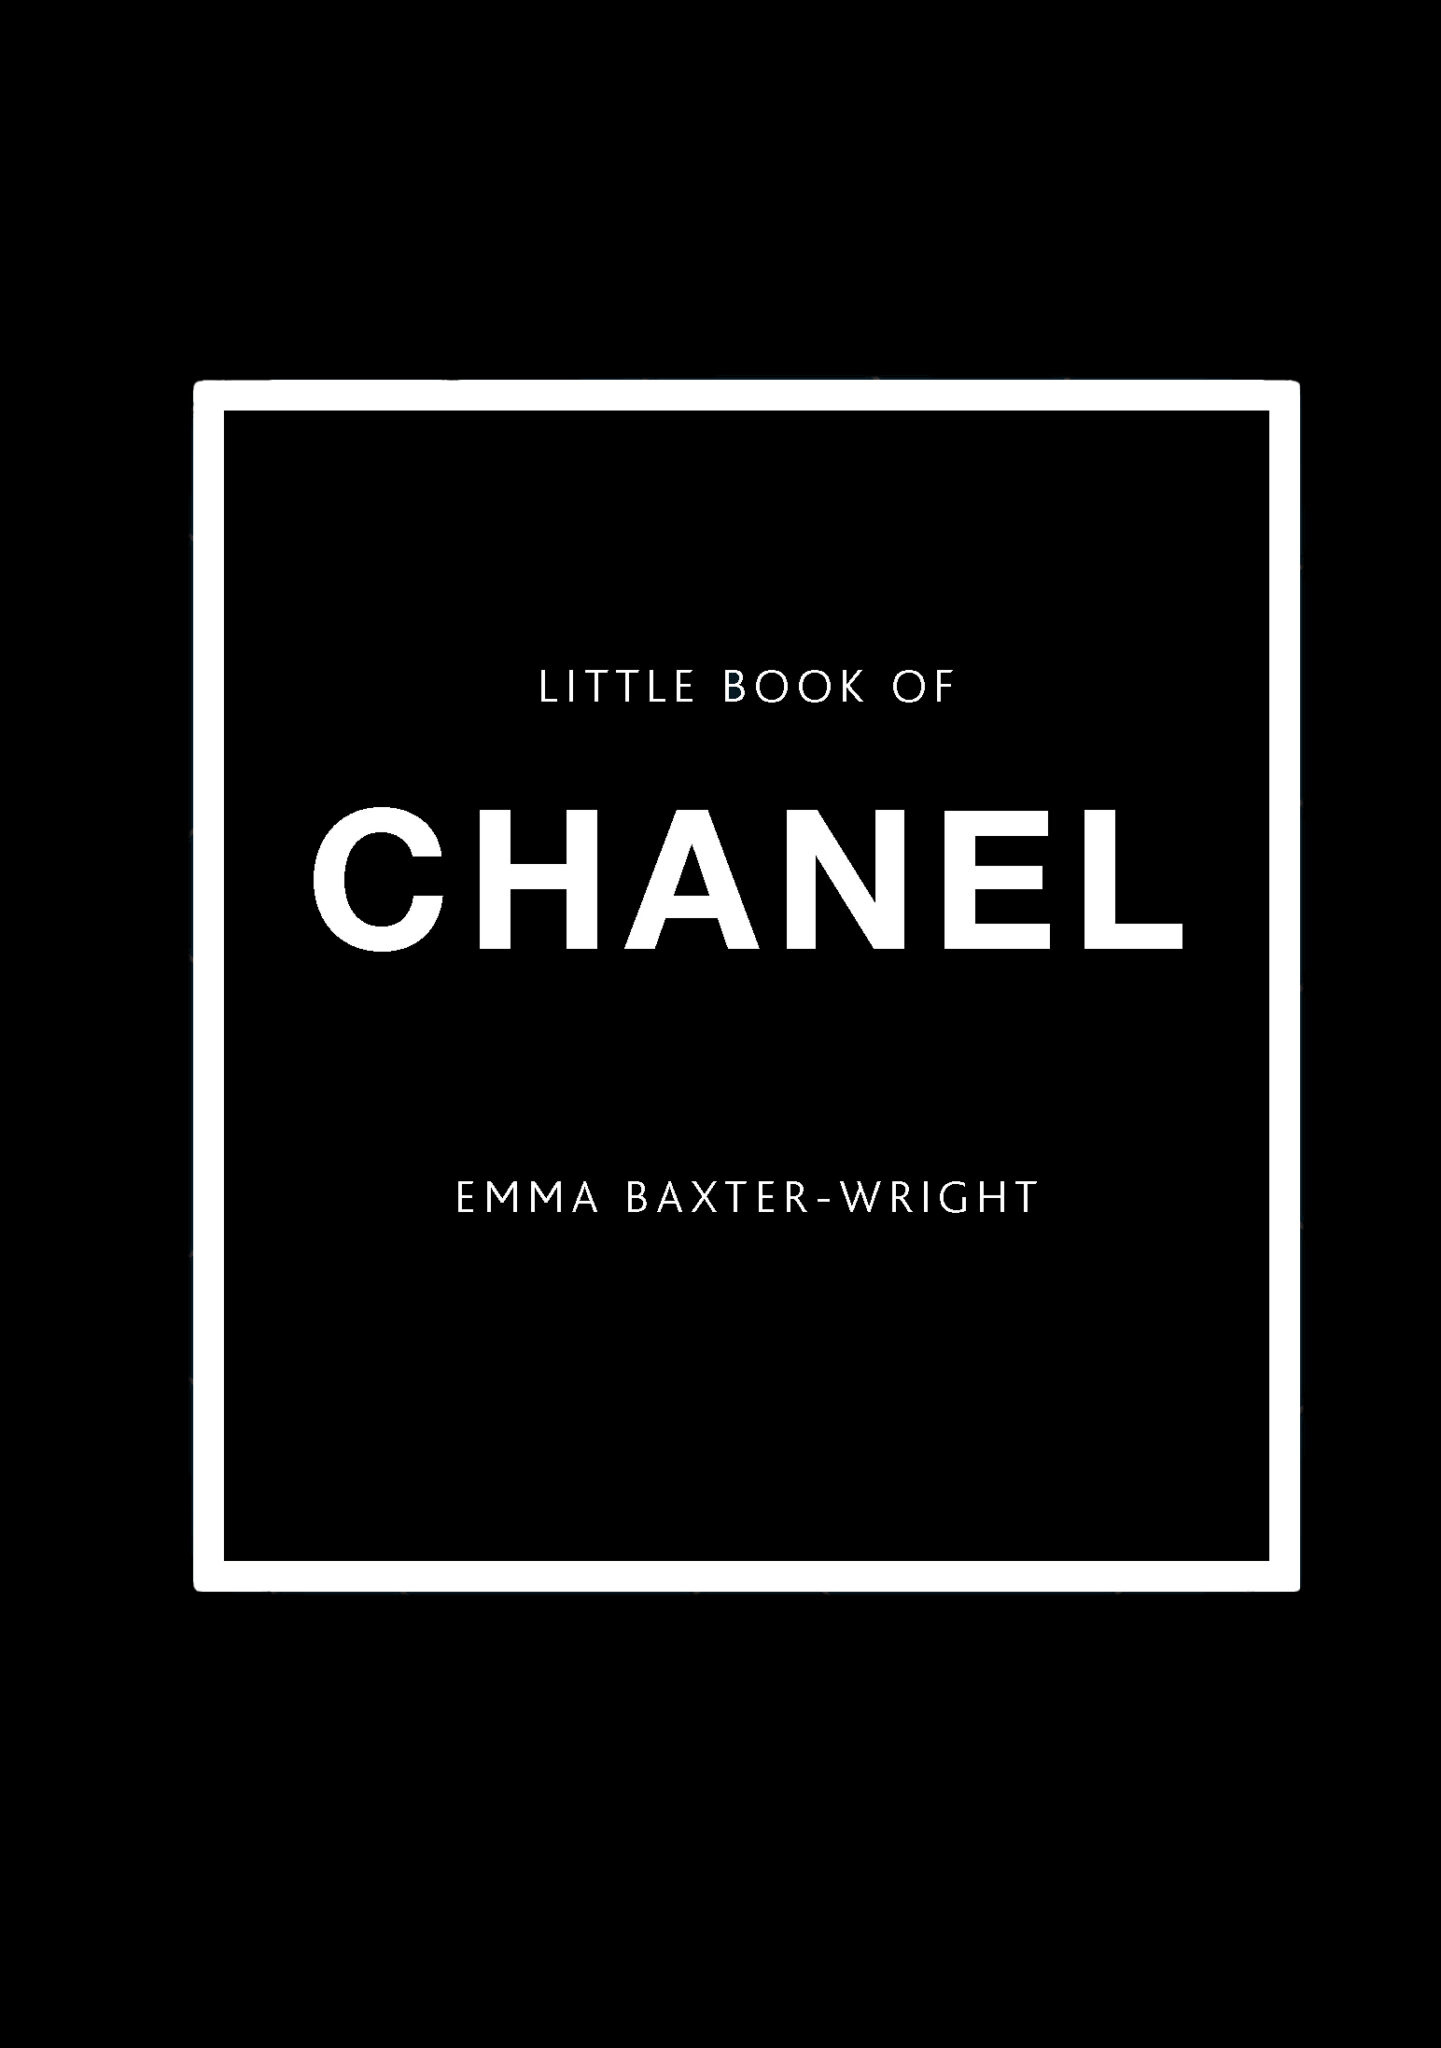 Boek Little Book of Chanel